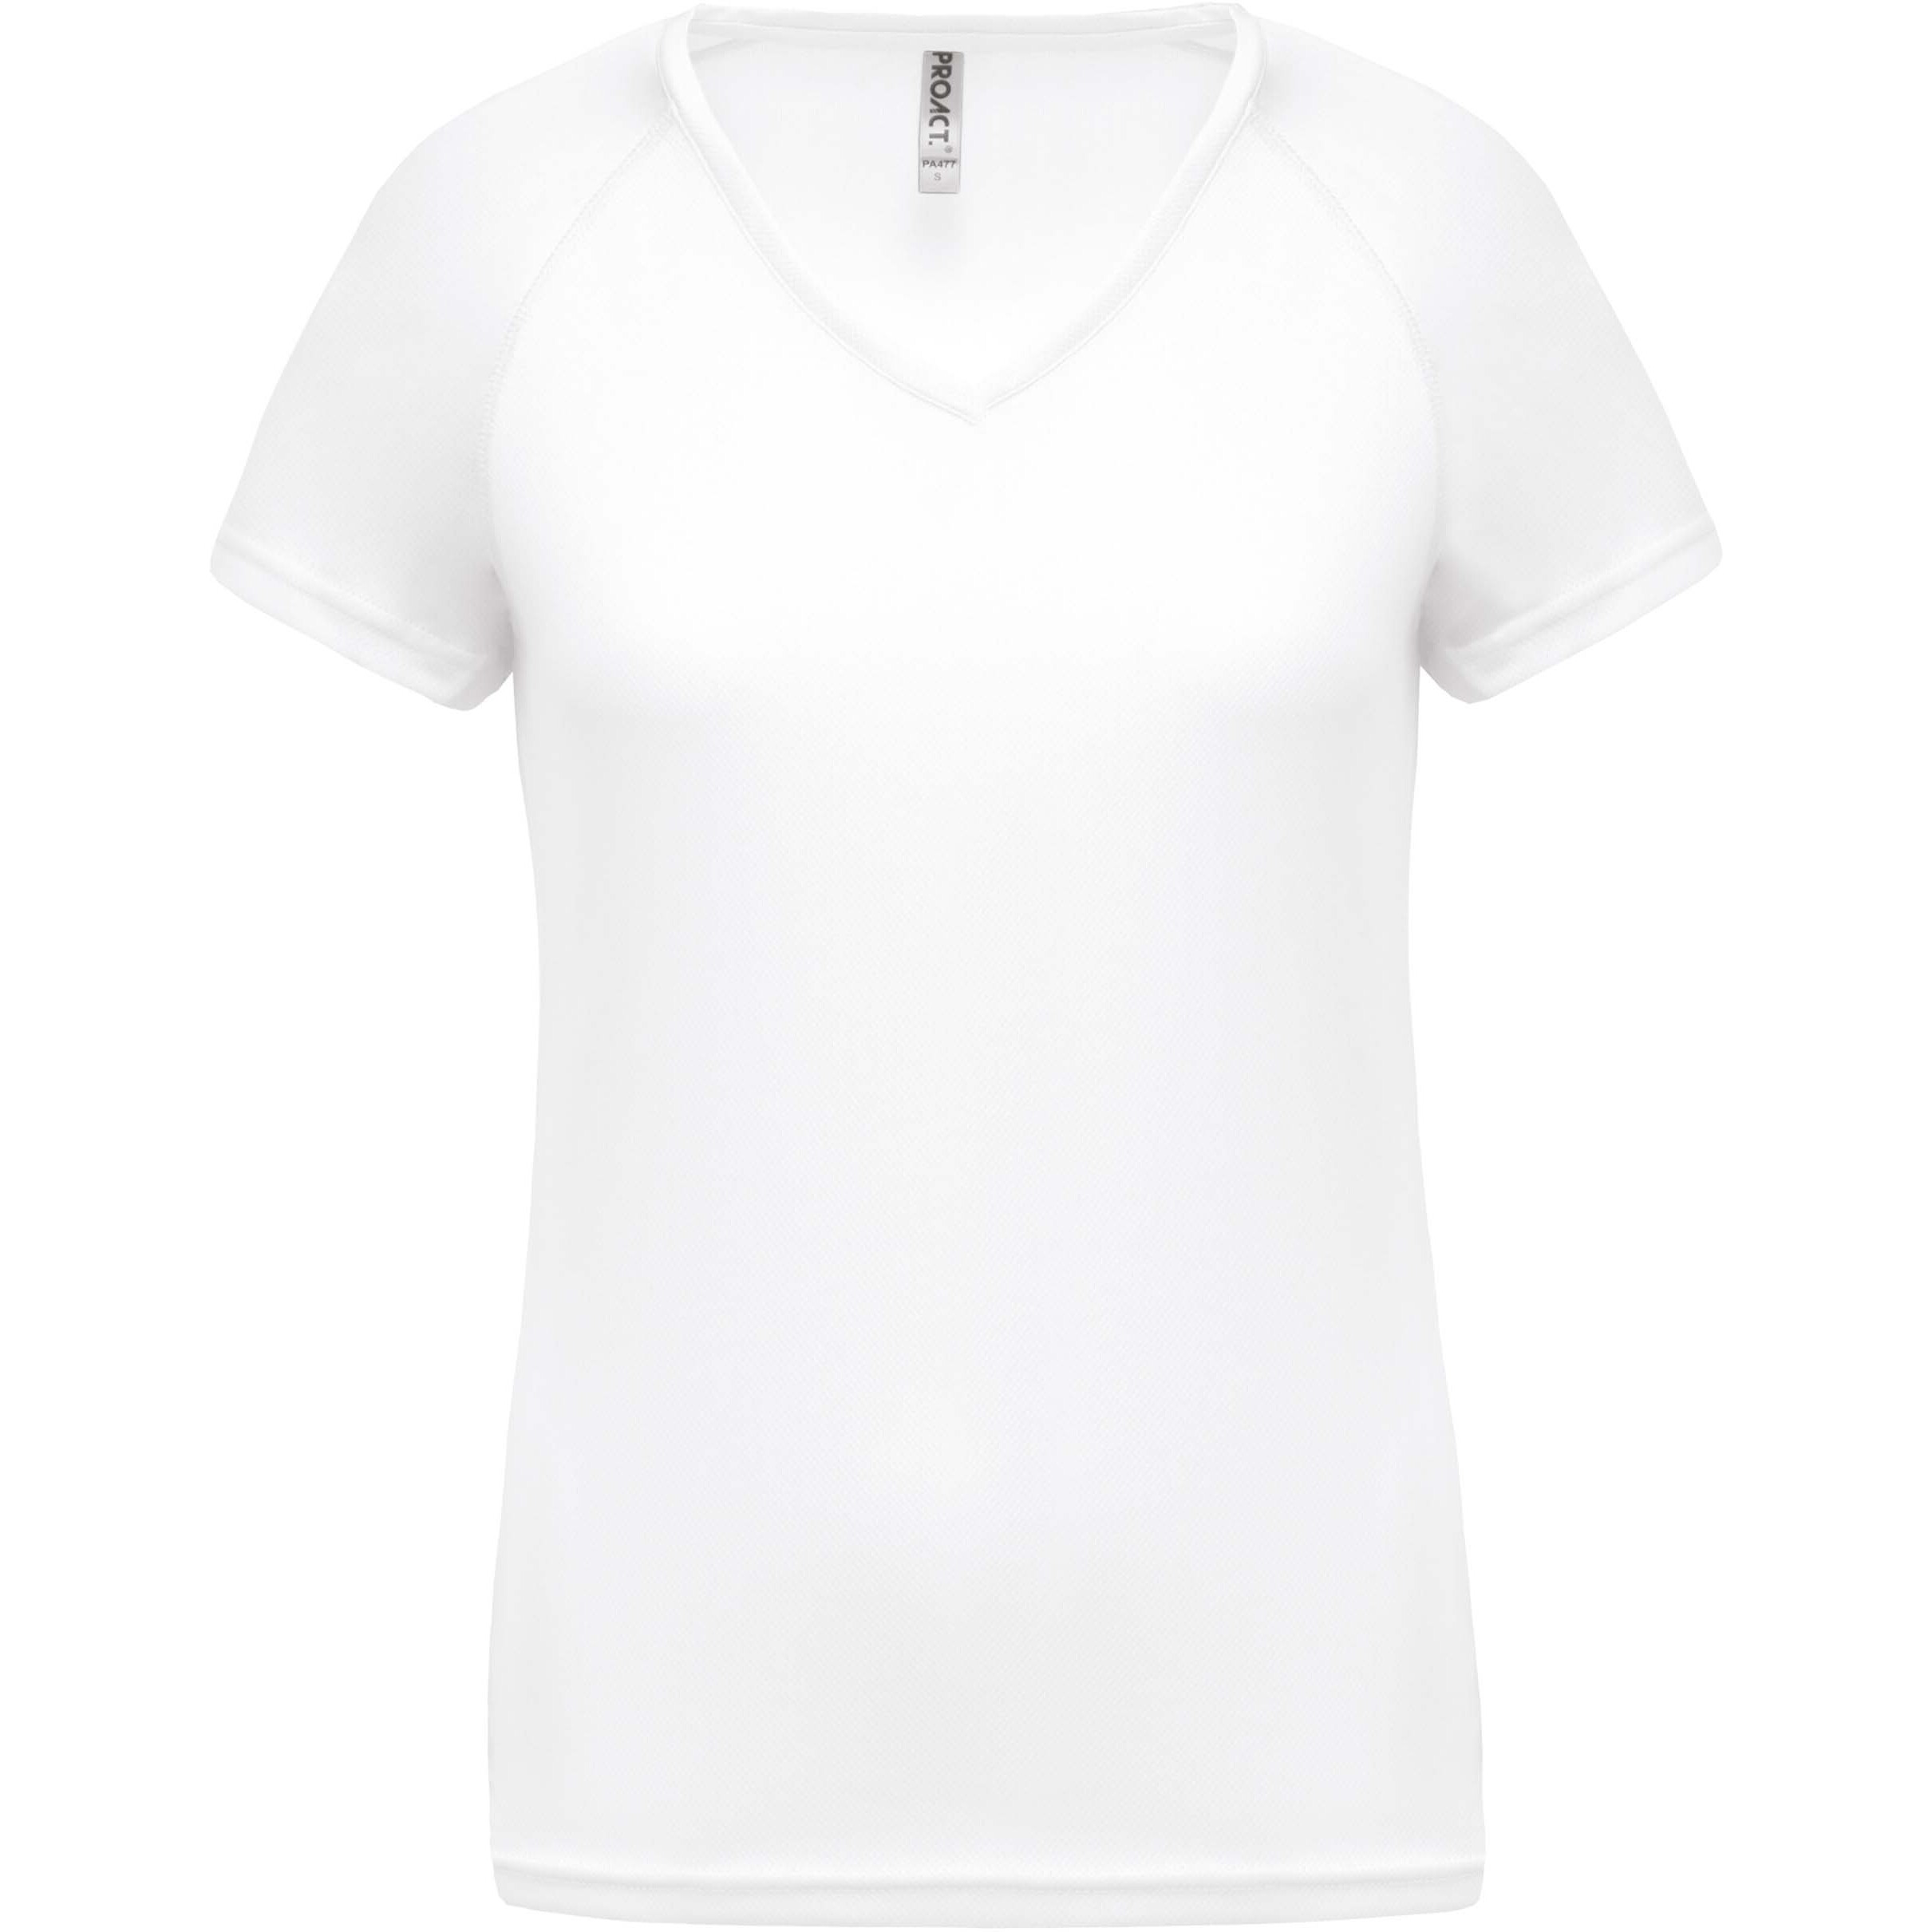 T-Shirt femme Col V Proact Sport blanc